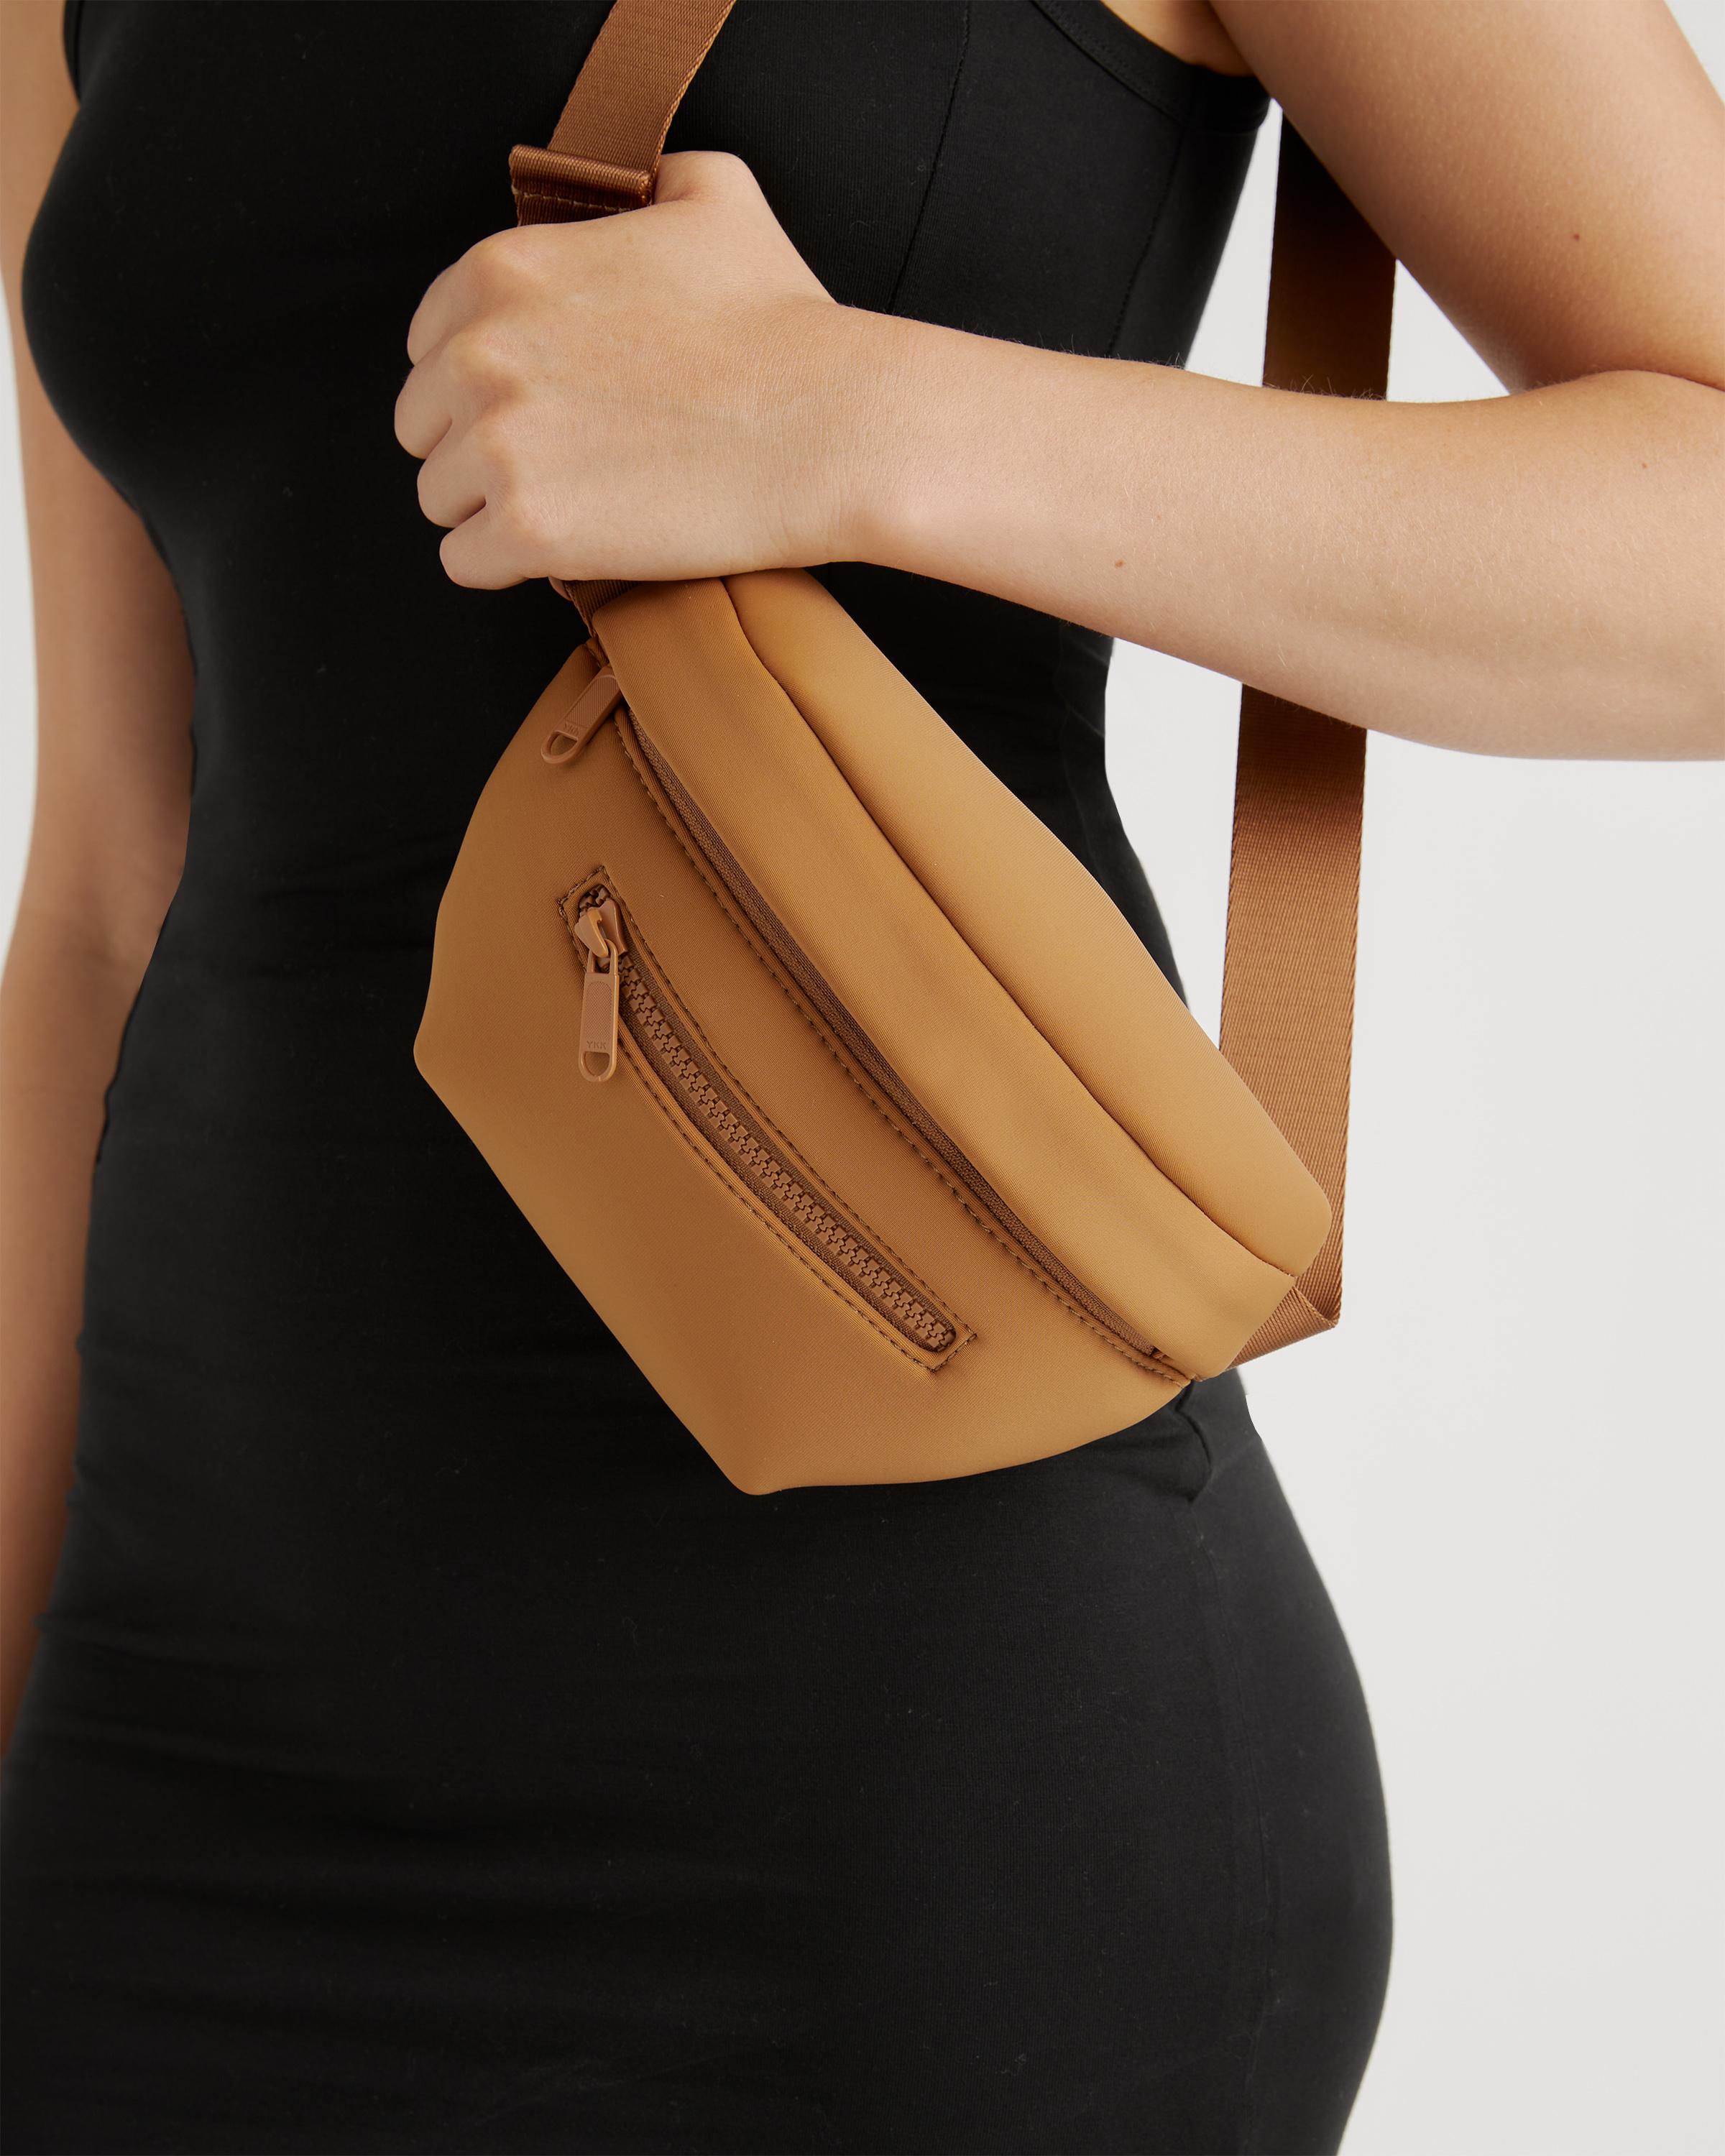 Women's All-Day Neoprene Belt Bag in Mocha by Quince